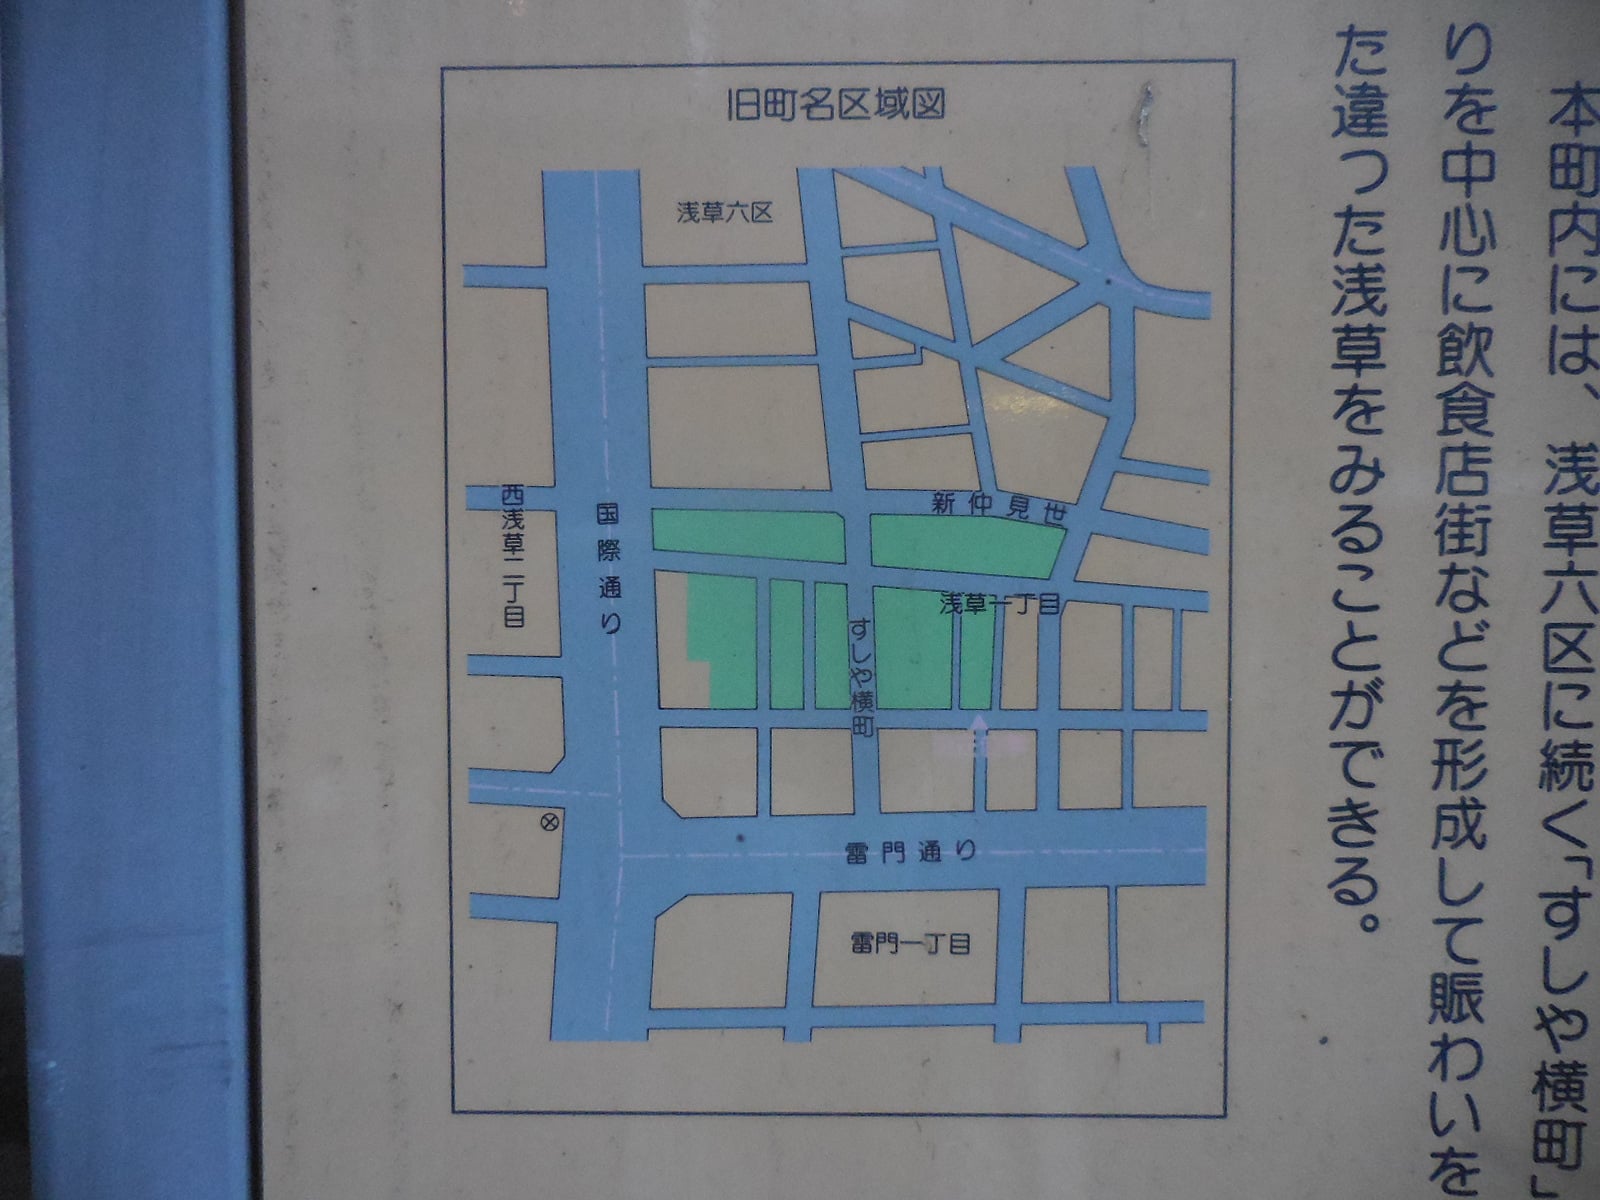 現在の地図にあてはめた浅草新畑町の区域図